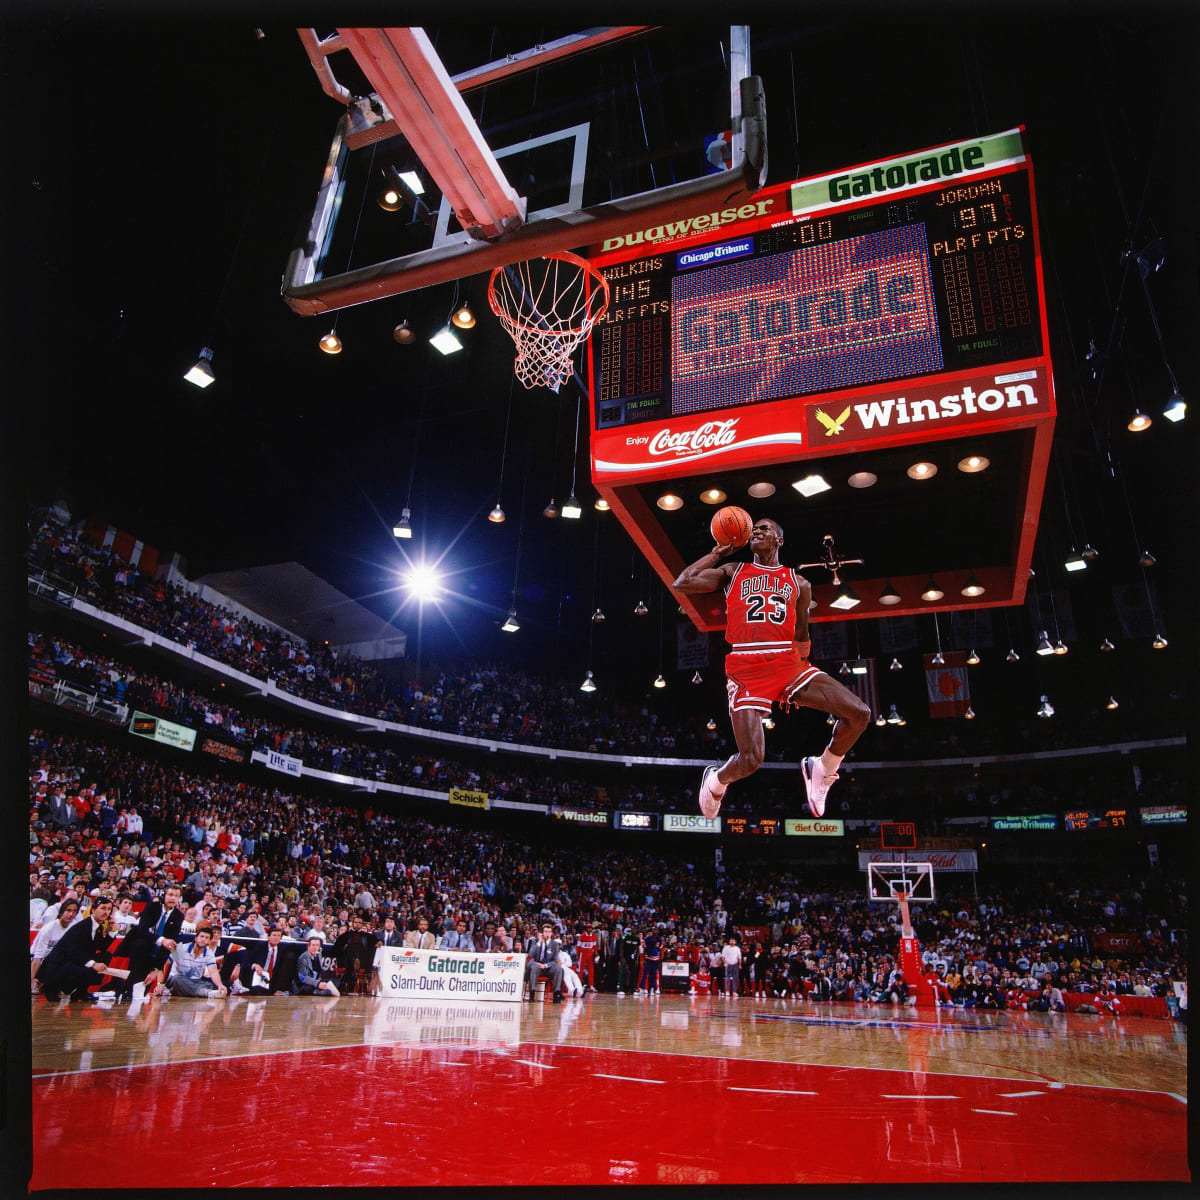 Michael Jordan dunk contest photo explained photographer -